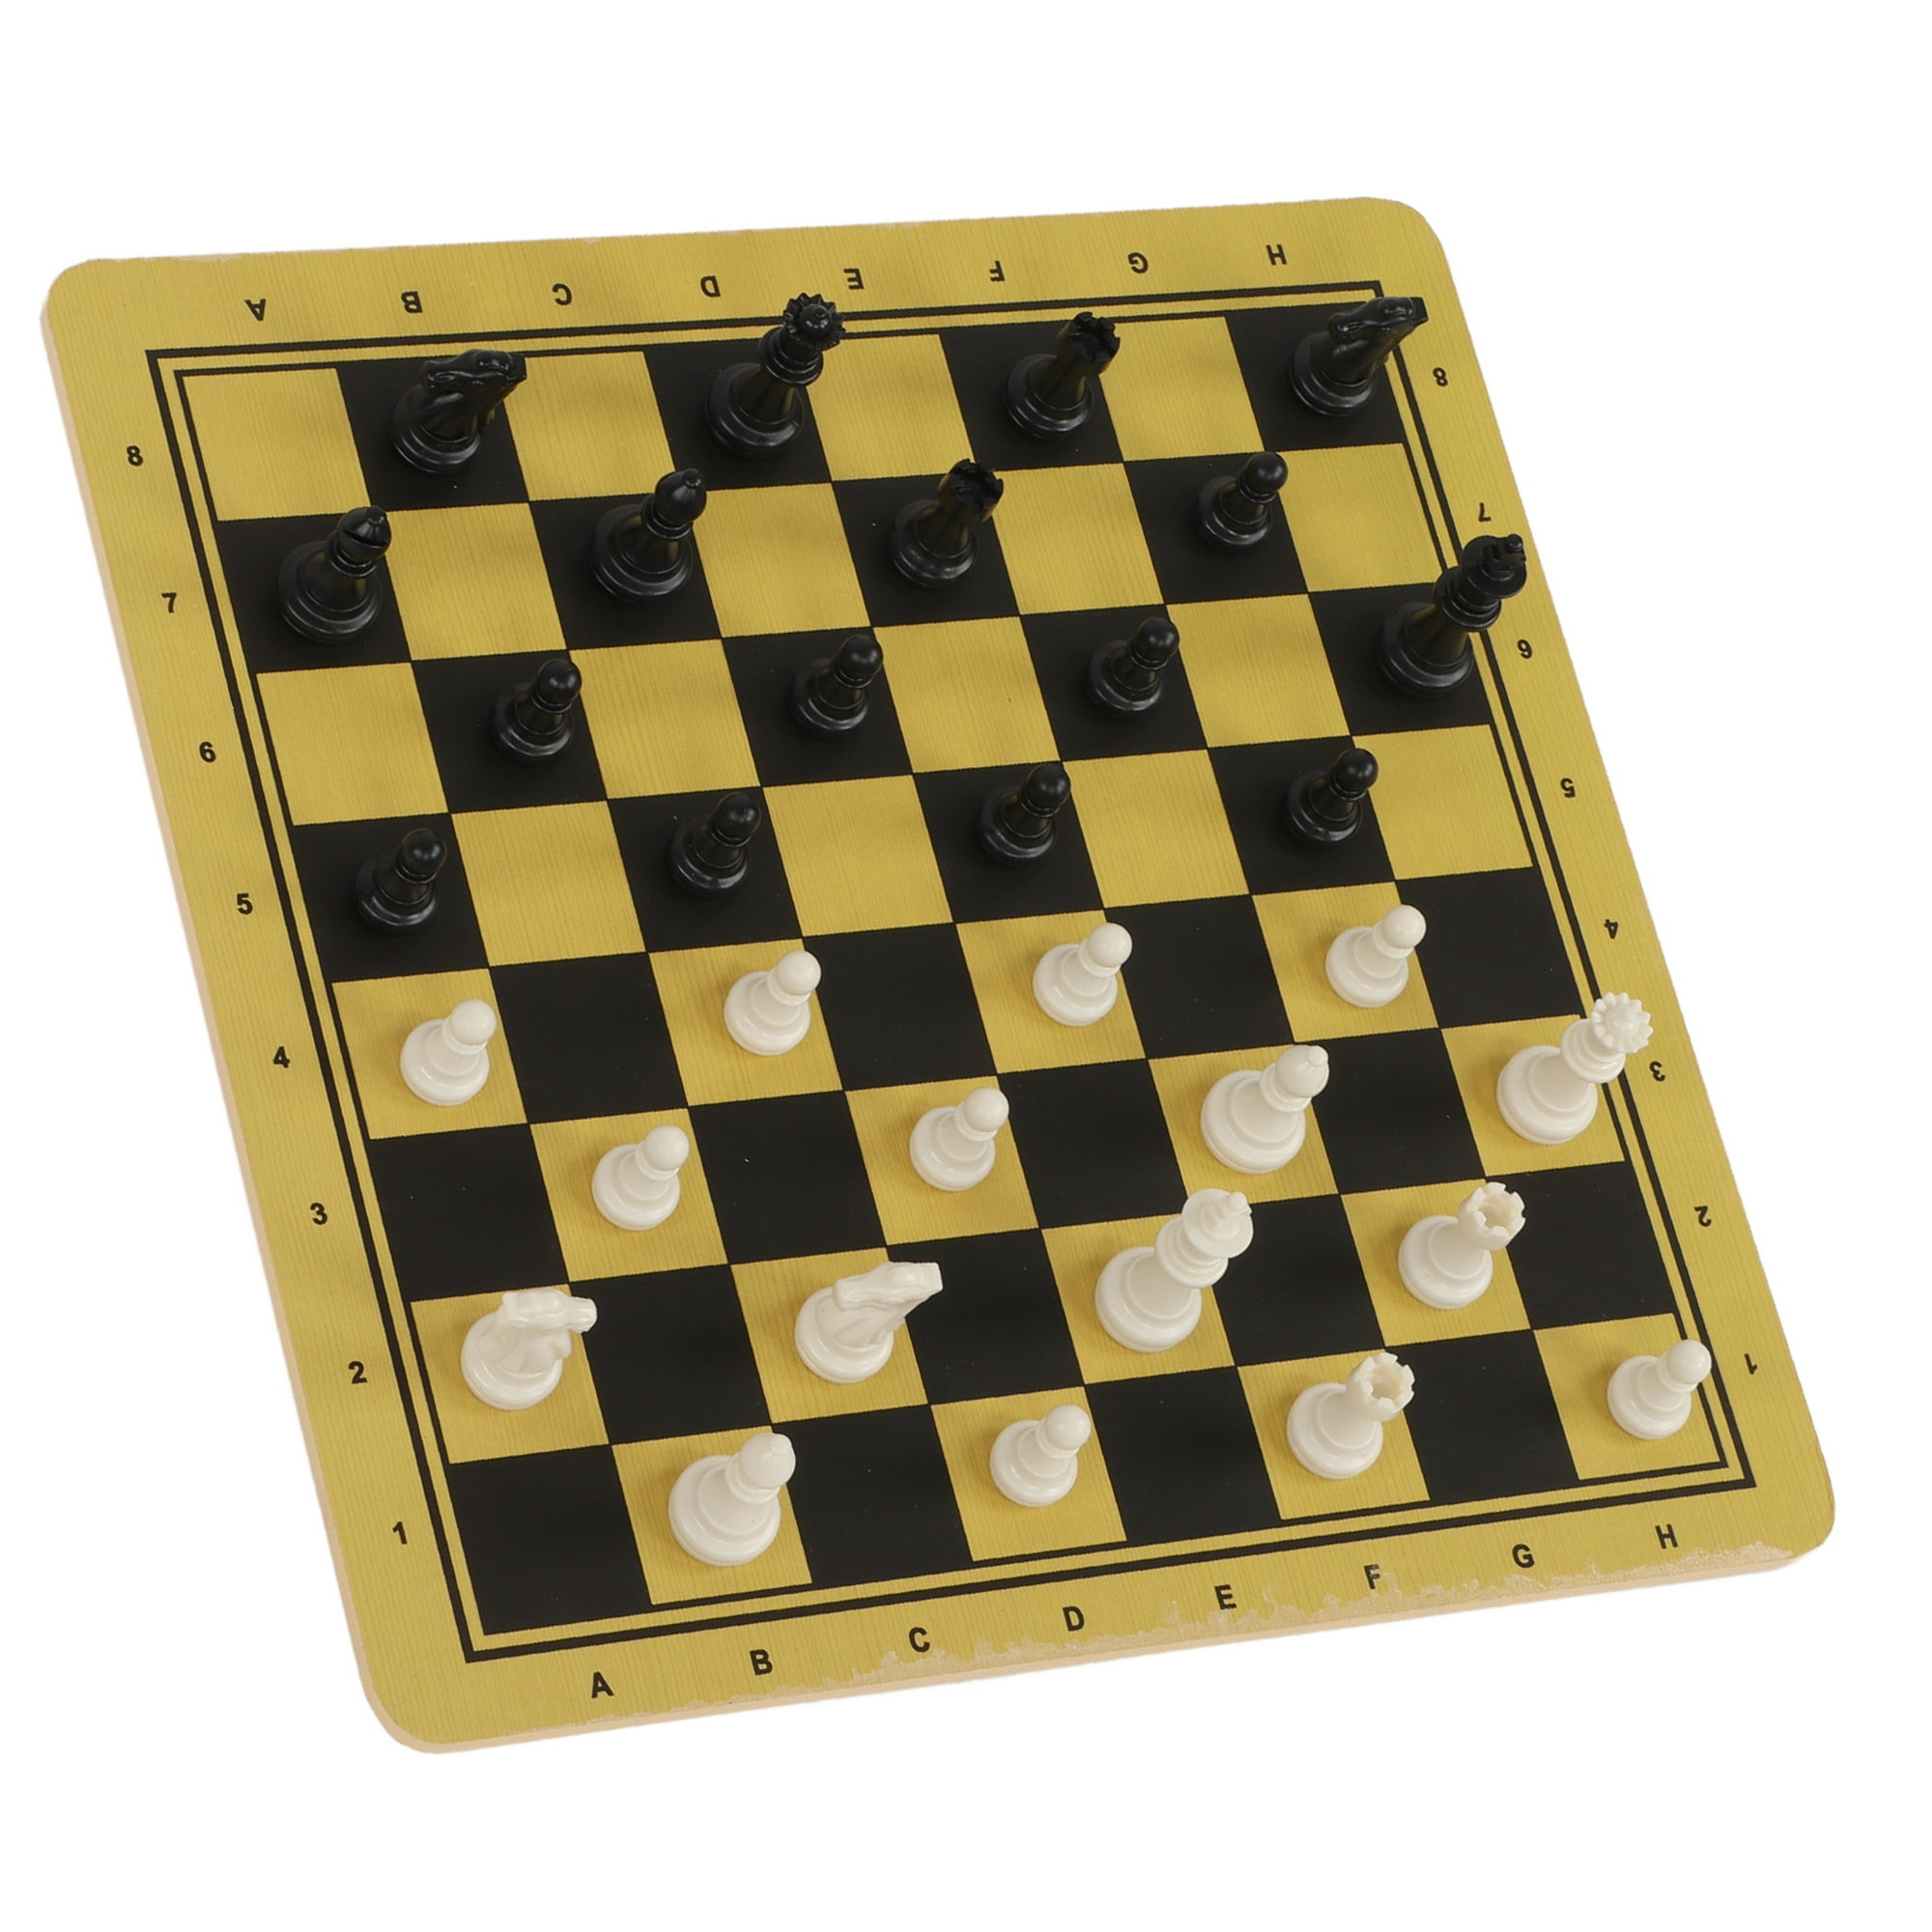 El juego 3 en 1 (el ajedrez, el peon, los nardos), el arbol, la tabla 40